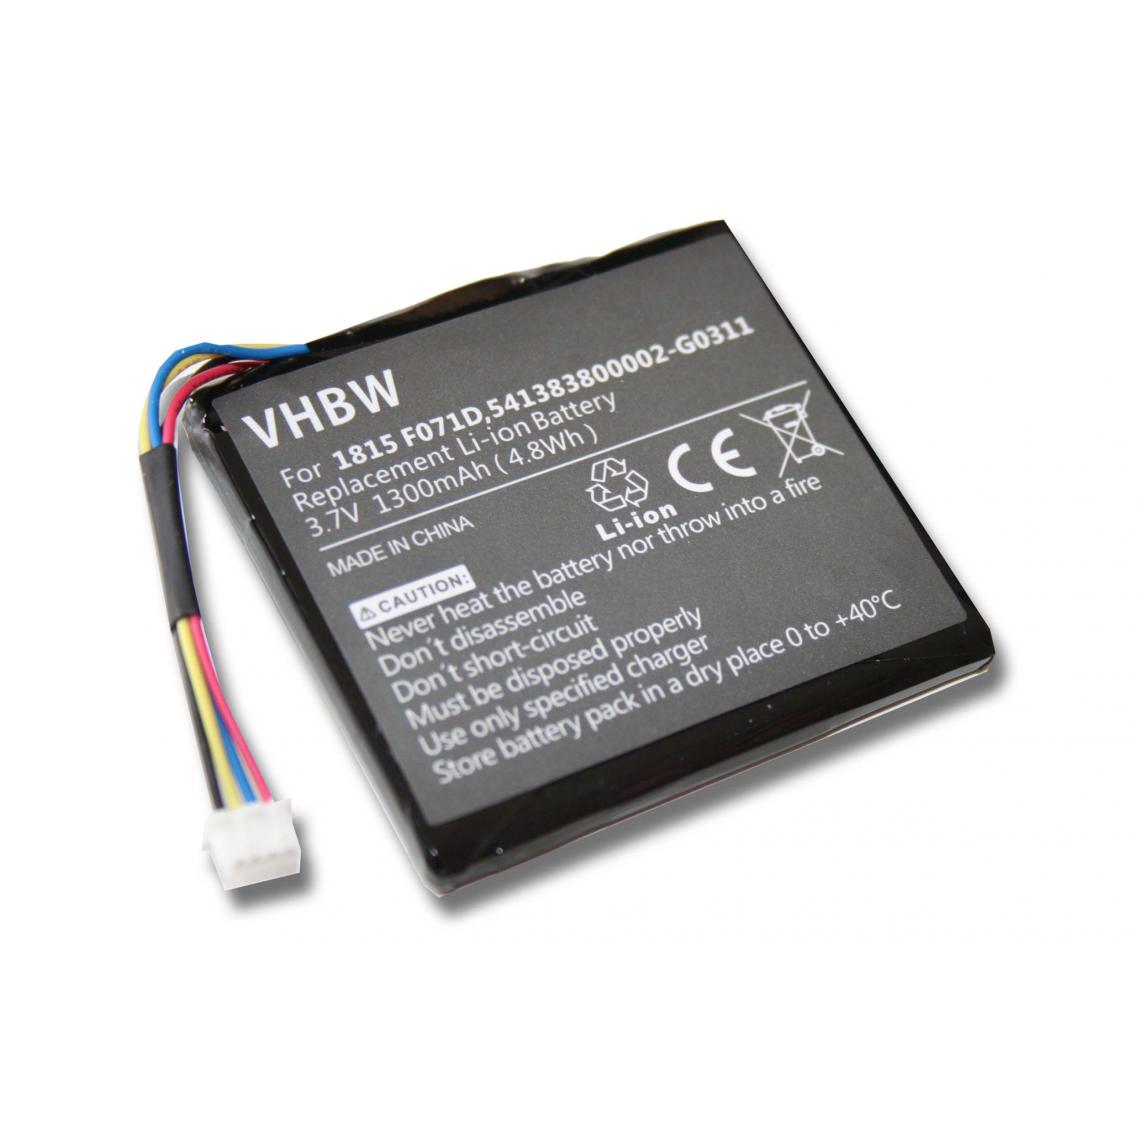 Vhbw - vhbw Batterie remplacement pour Texas Instruments 1815 F071D, 1ICP5/43/50, 3.7L1060SP, 3.7L1200SP pour calculatrice de poche (1300mAh, 3,7V, Li-ion) - Autre appareil de mesure